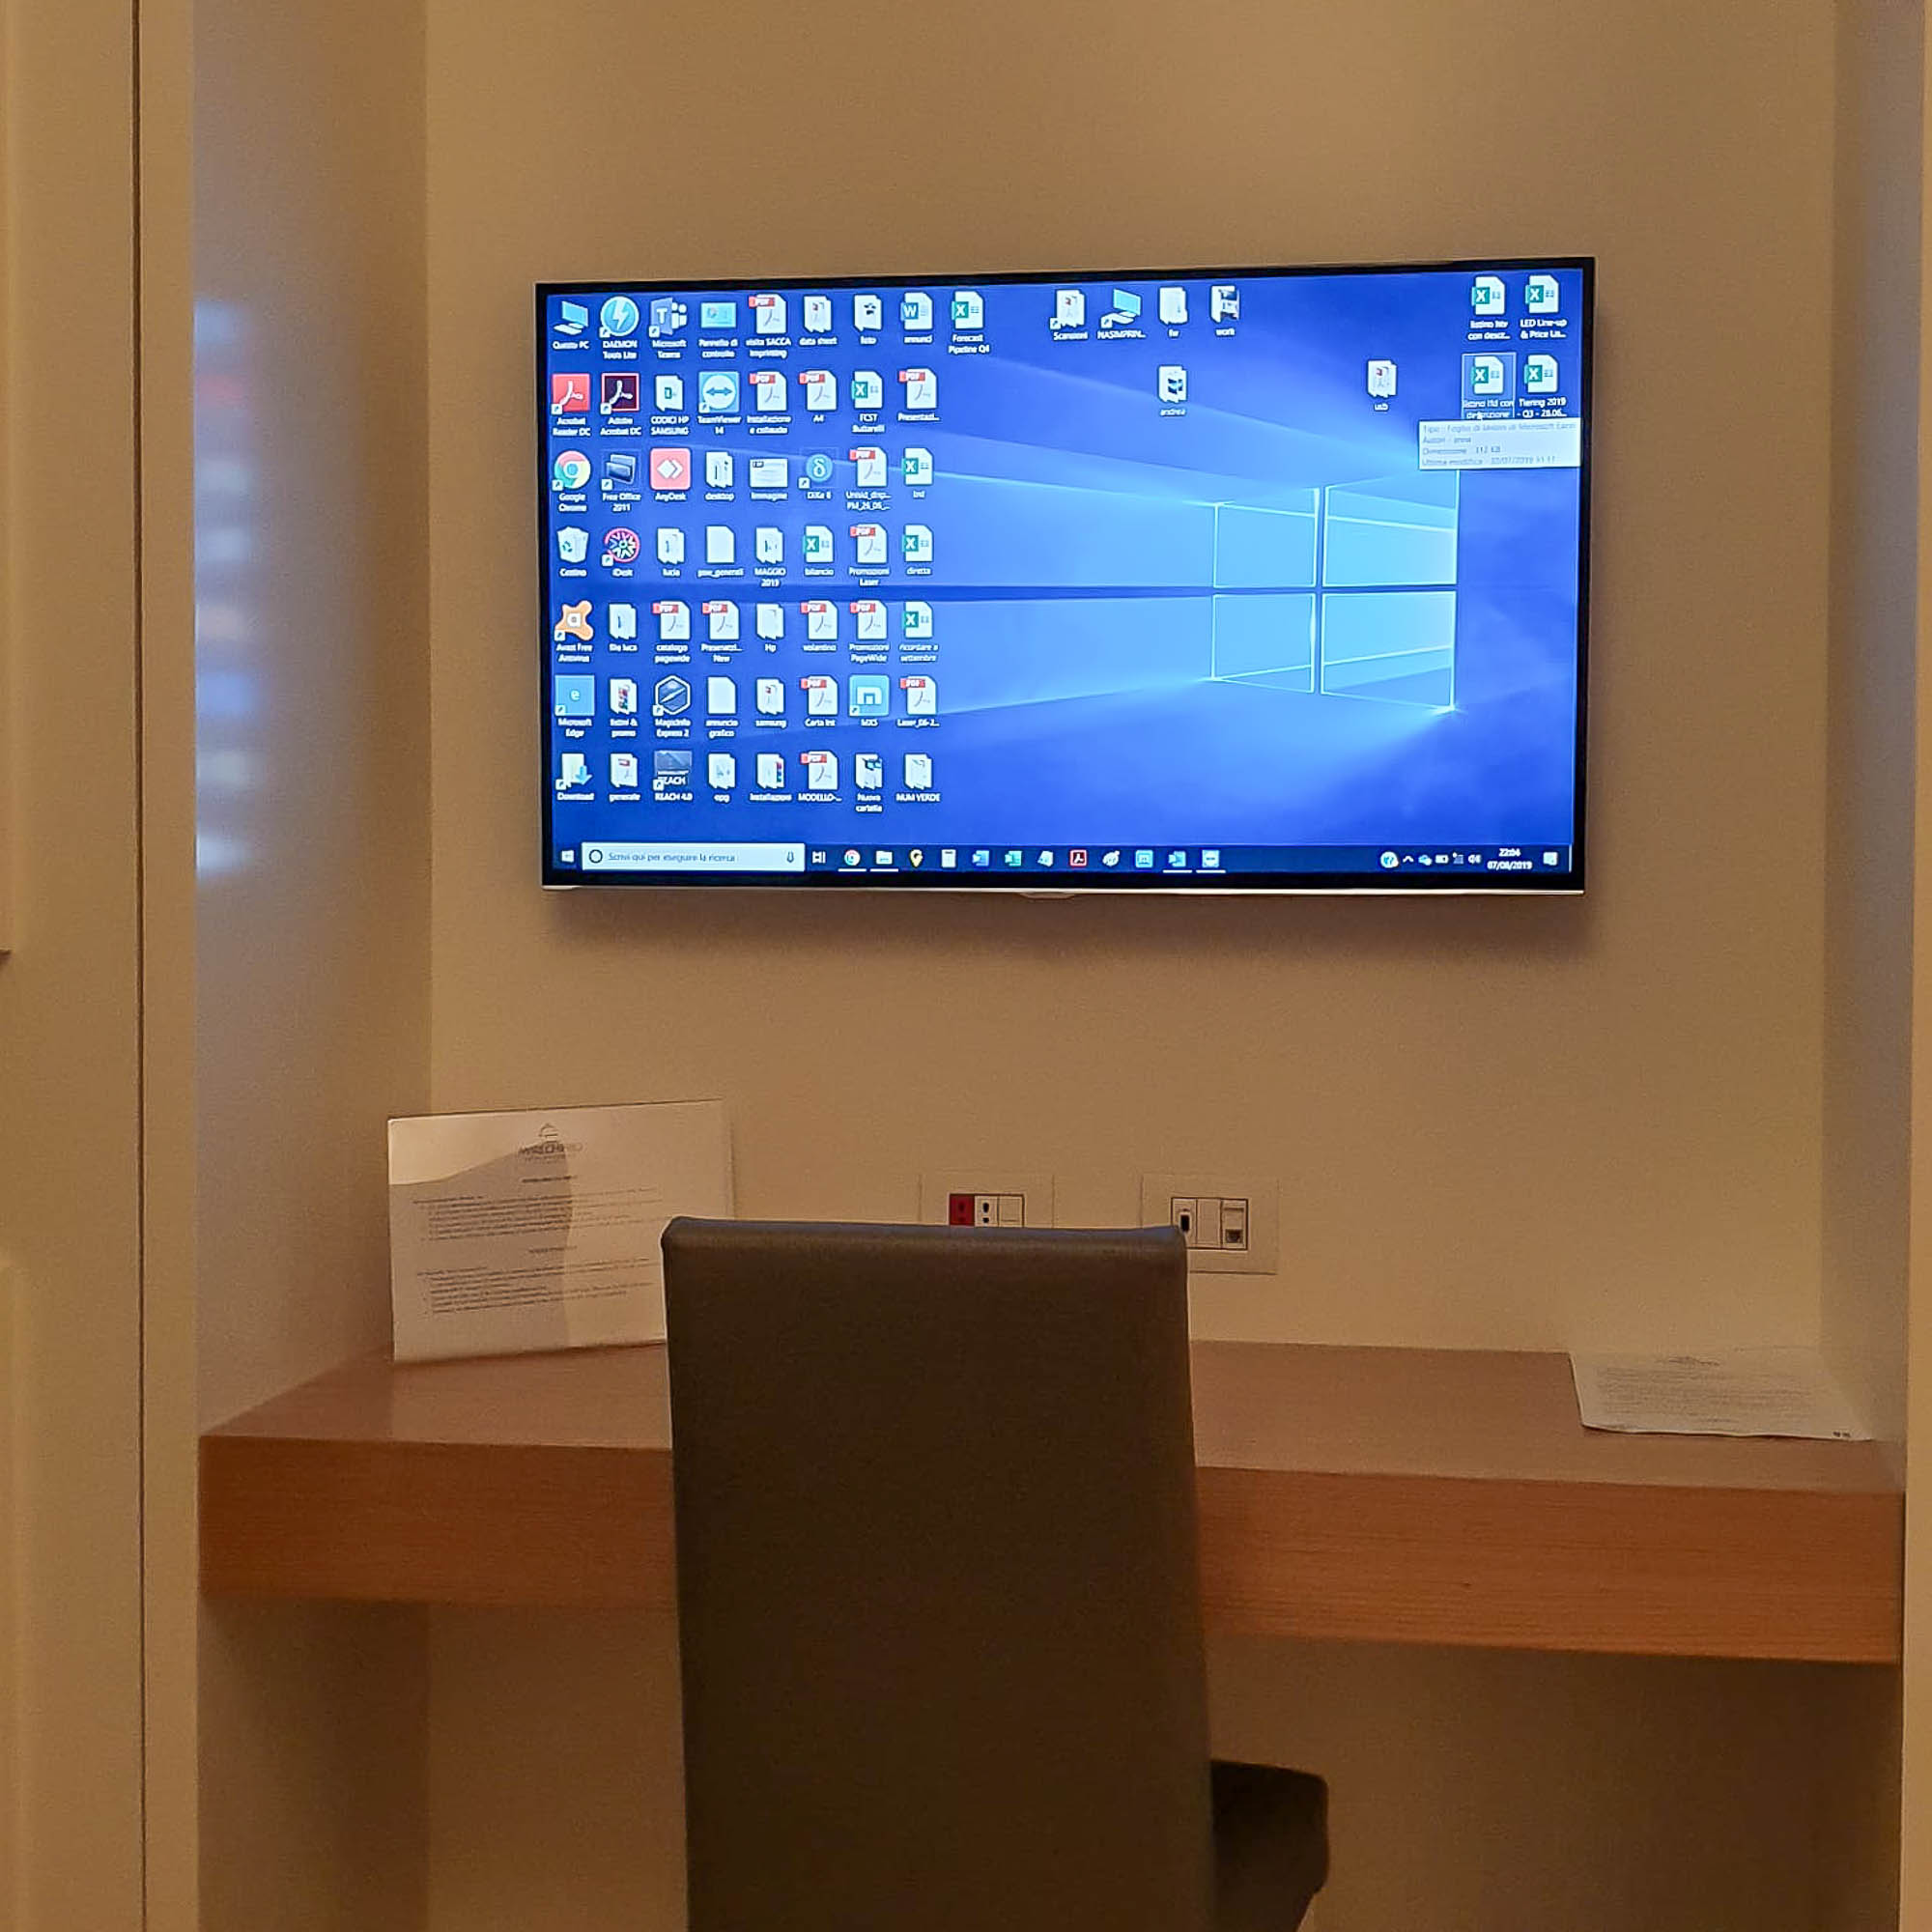 Hotel TV Samsung installato a nell'arredamento della camera